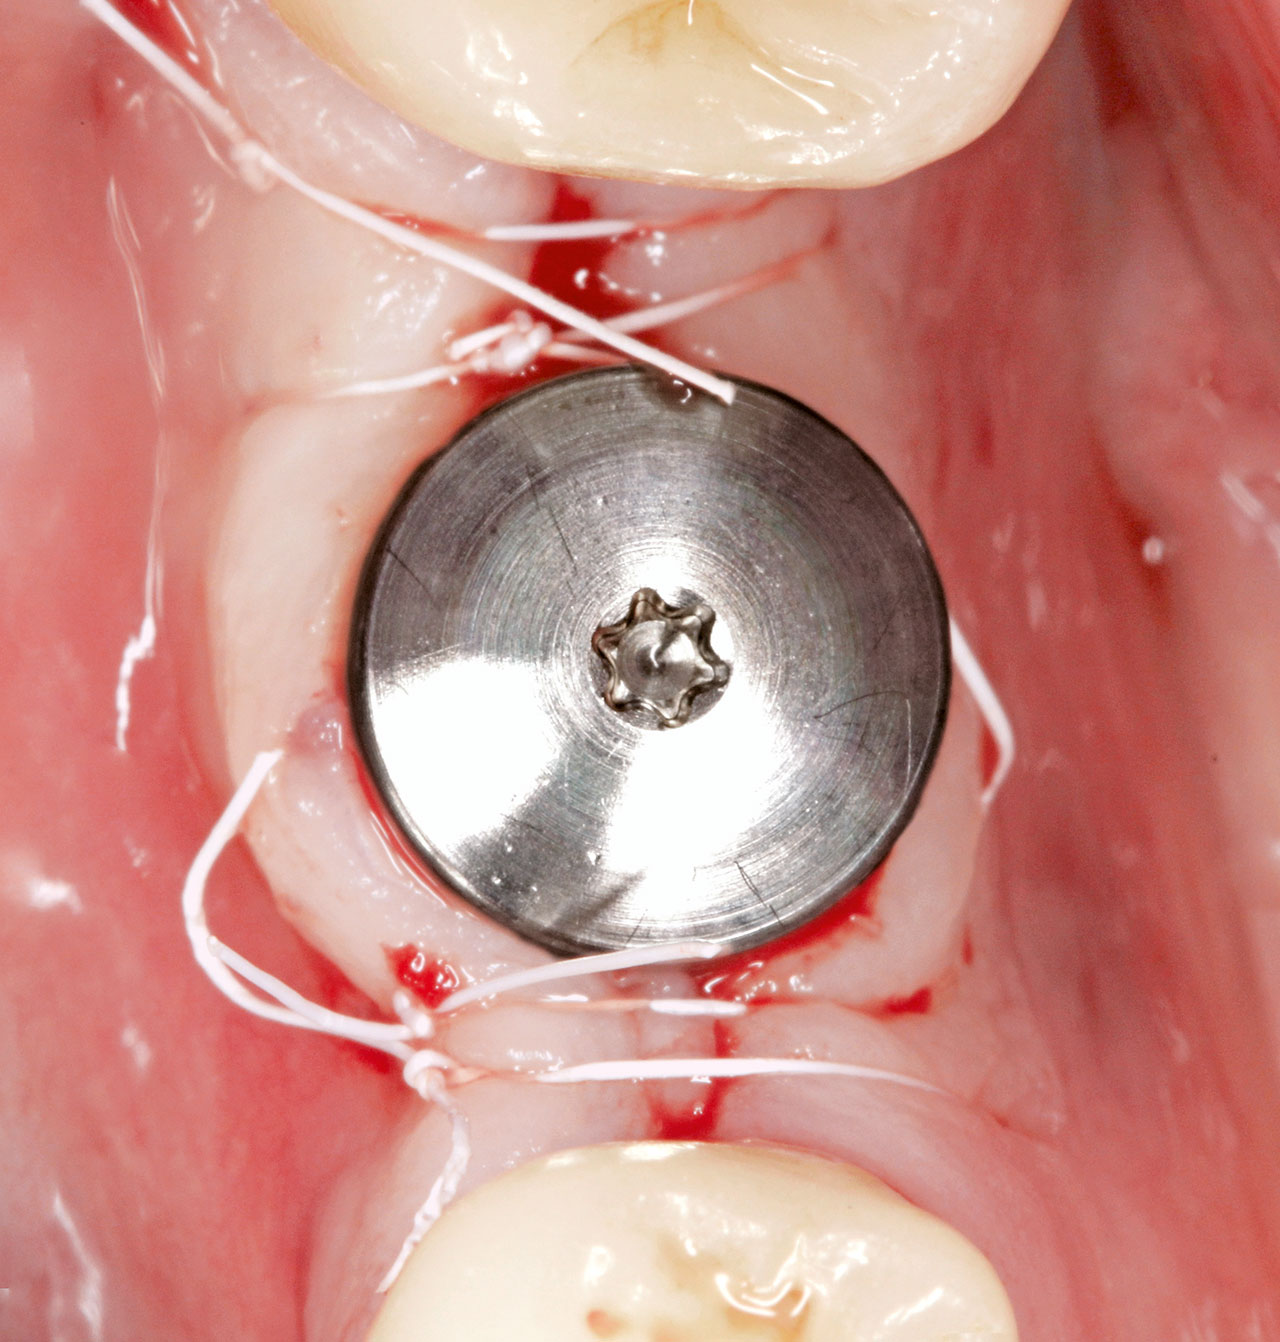 Abb. 9 Gingivaformer mit 3 mm Höhe, Nahtfixation der Lappenränder. Der keratinisierte Randabschluss bukkal und lingual des Implantats konnte vollständig erhalten werden.